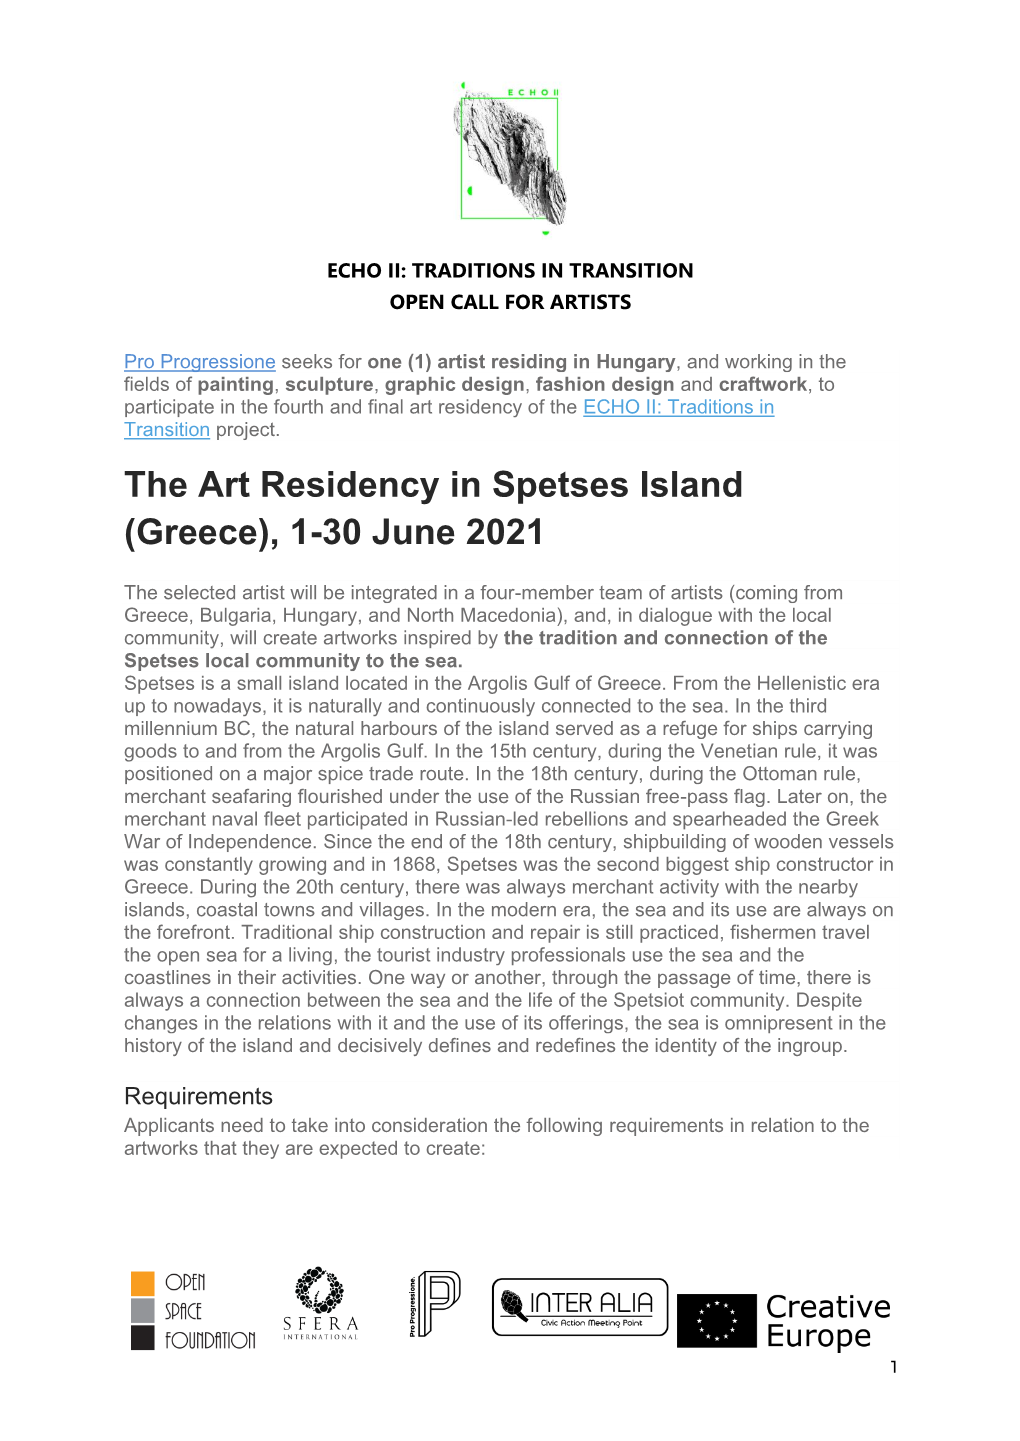 The Art Residency in Spetses Island (Greece), 1-30 June 2021